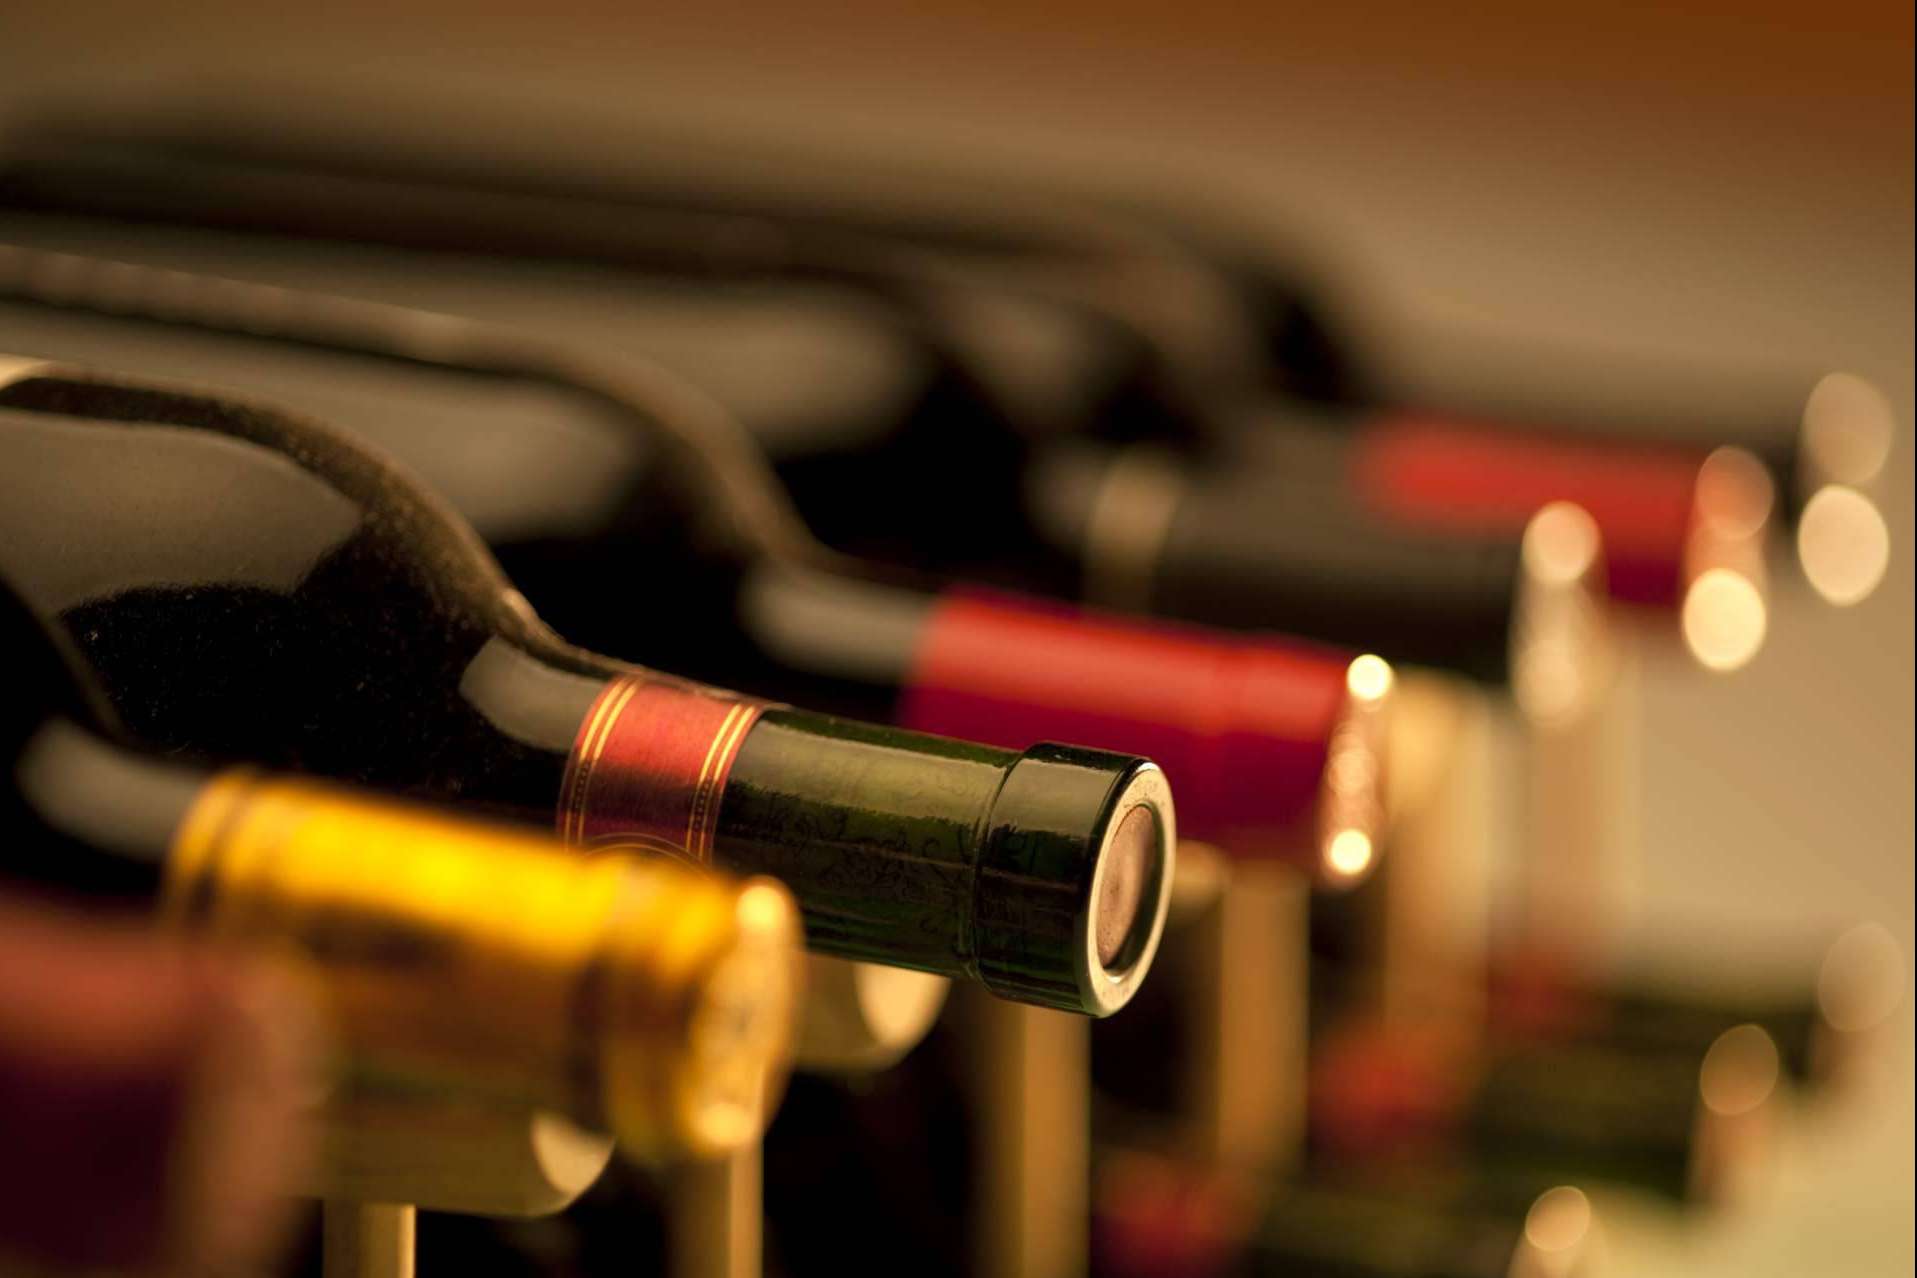 Naturelovers Wines ofrece su vino artesanal 8 Copas